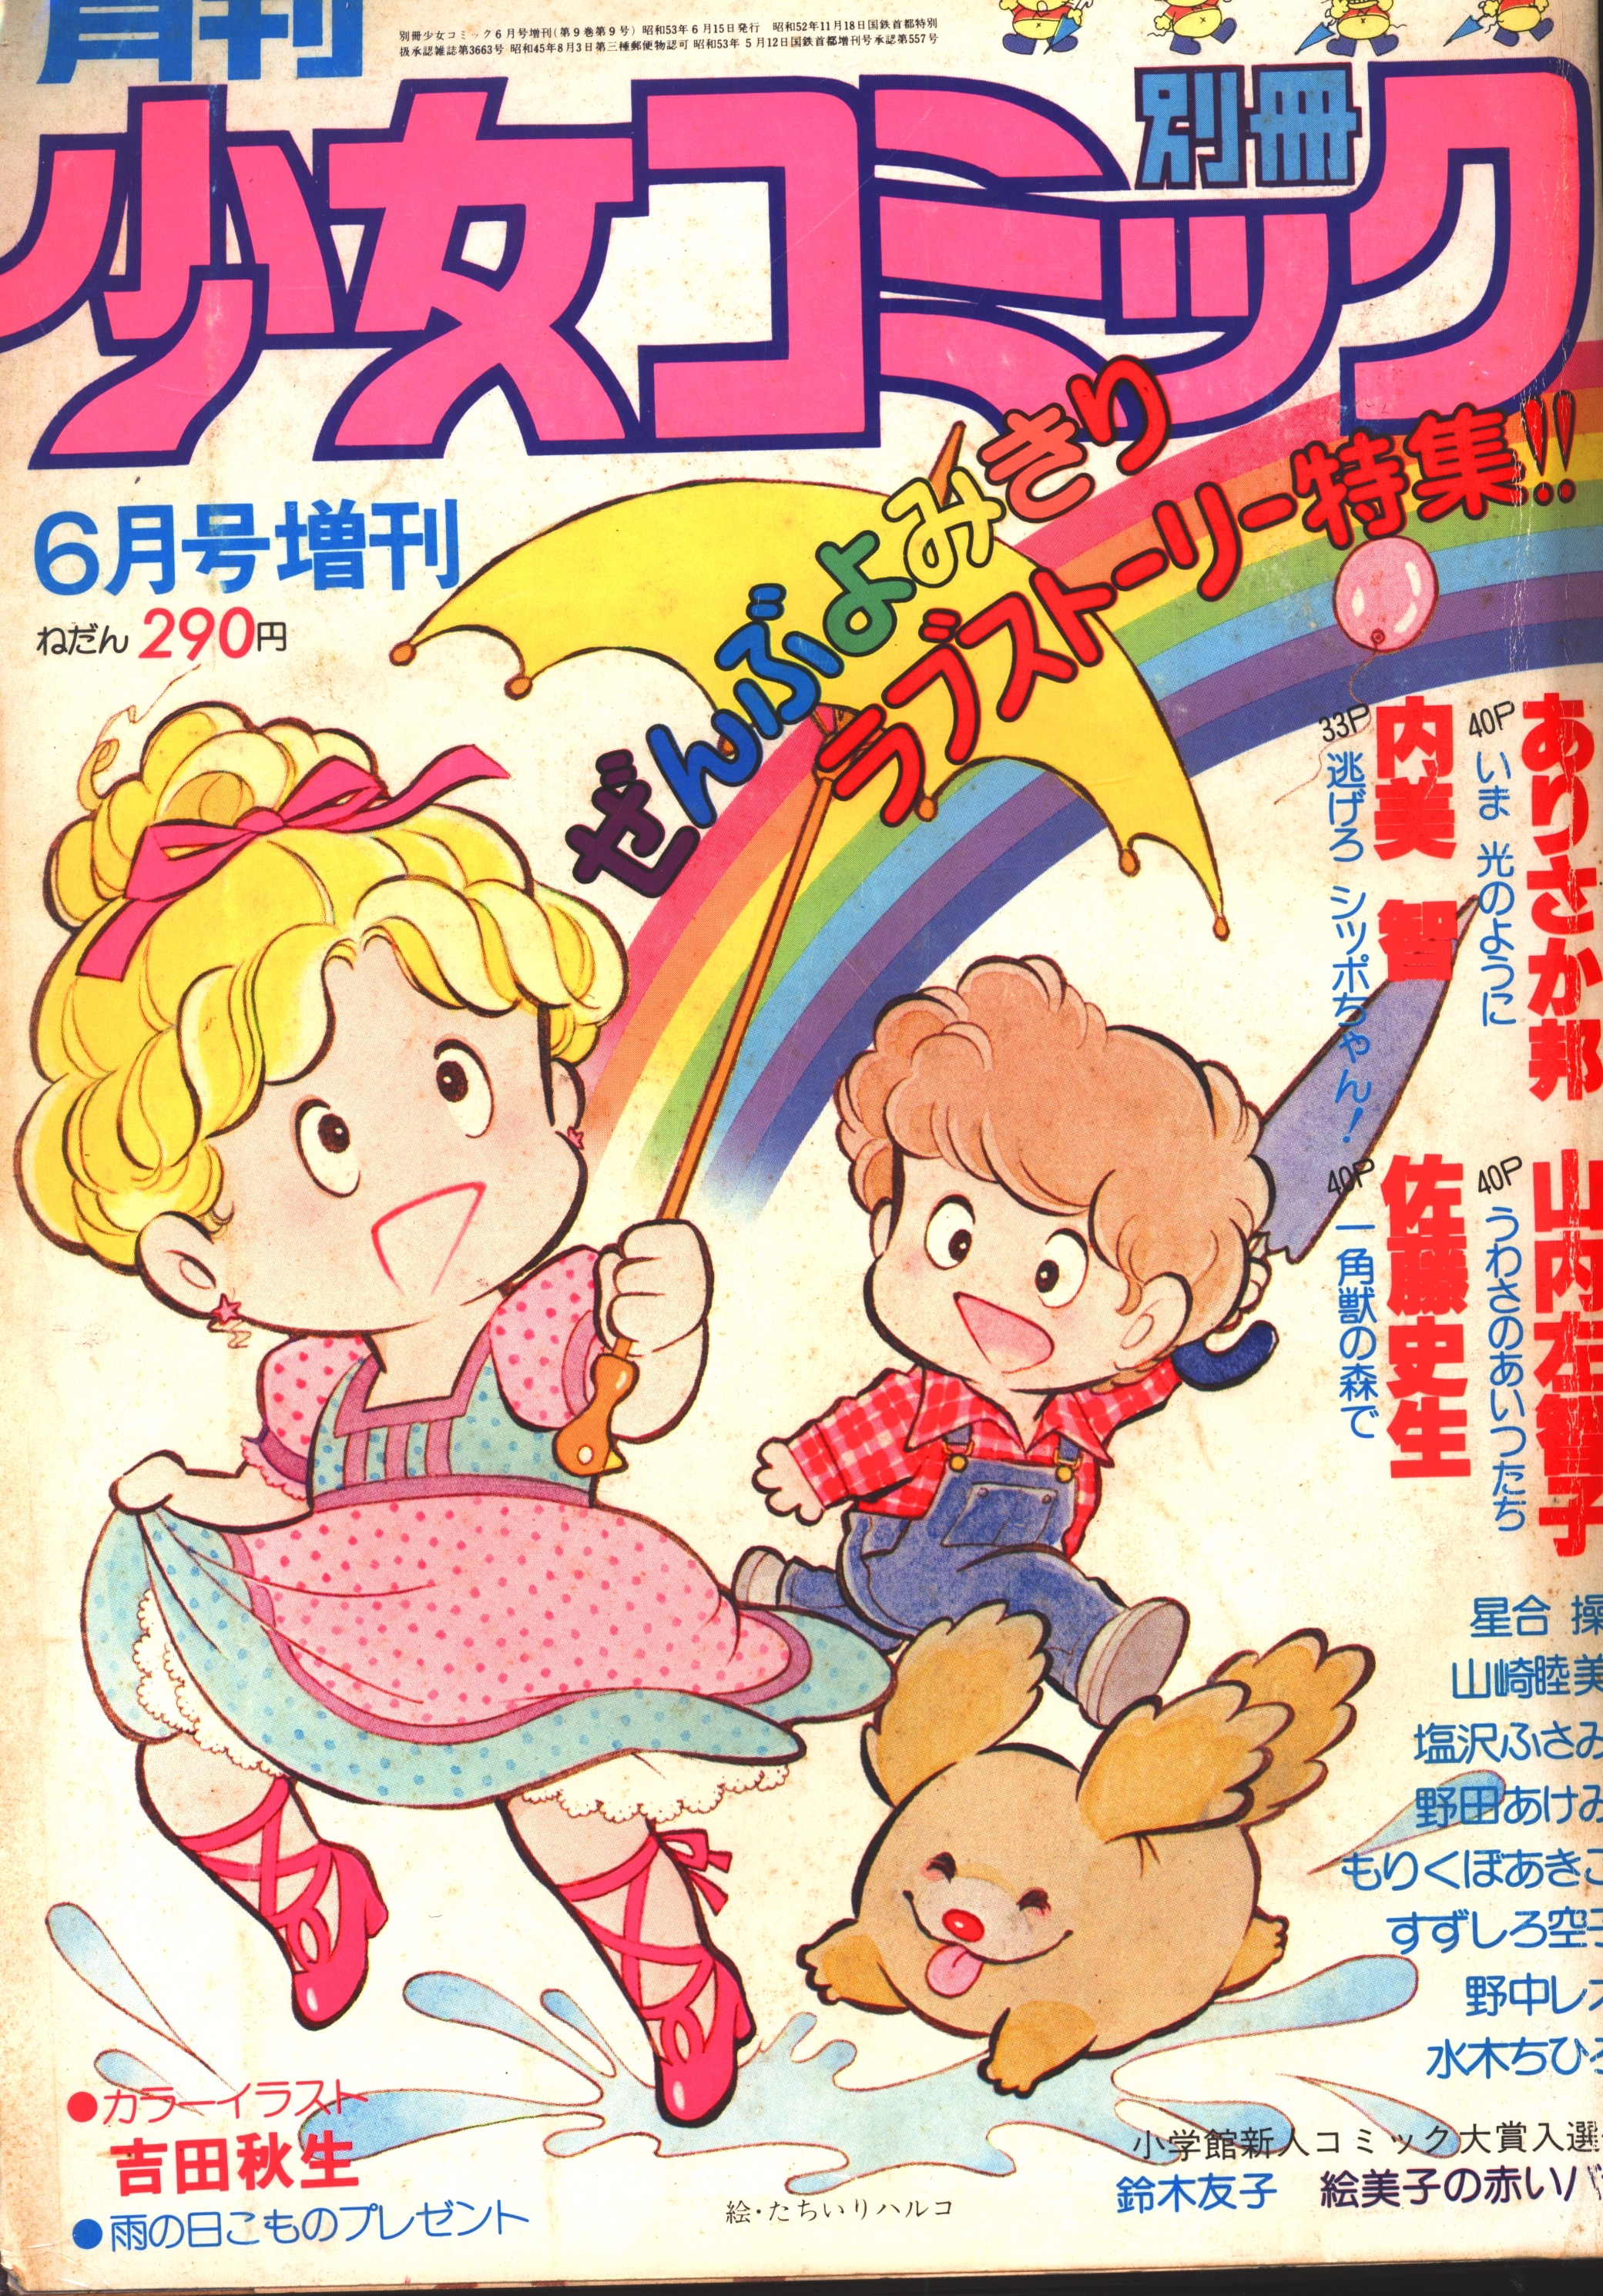 小学館 1978年 昭和53年 の漫画雑誌 別冊少女コミック1978年 昭和53年 6月号増刊 7806 まんだらけ Mandarake